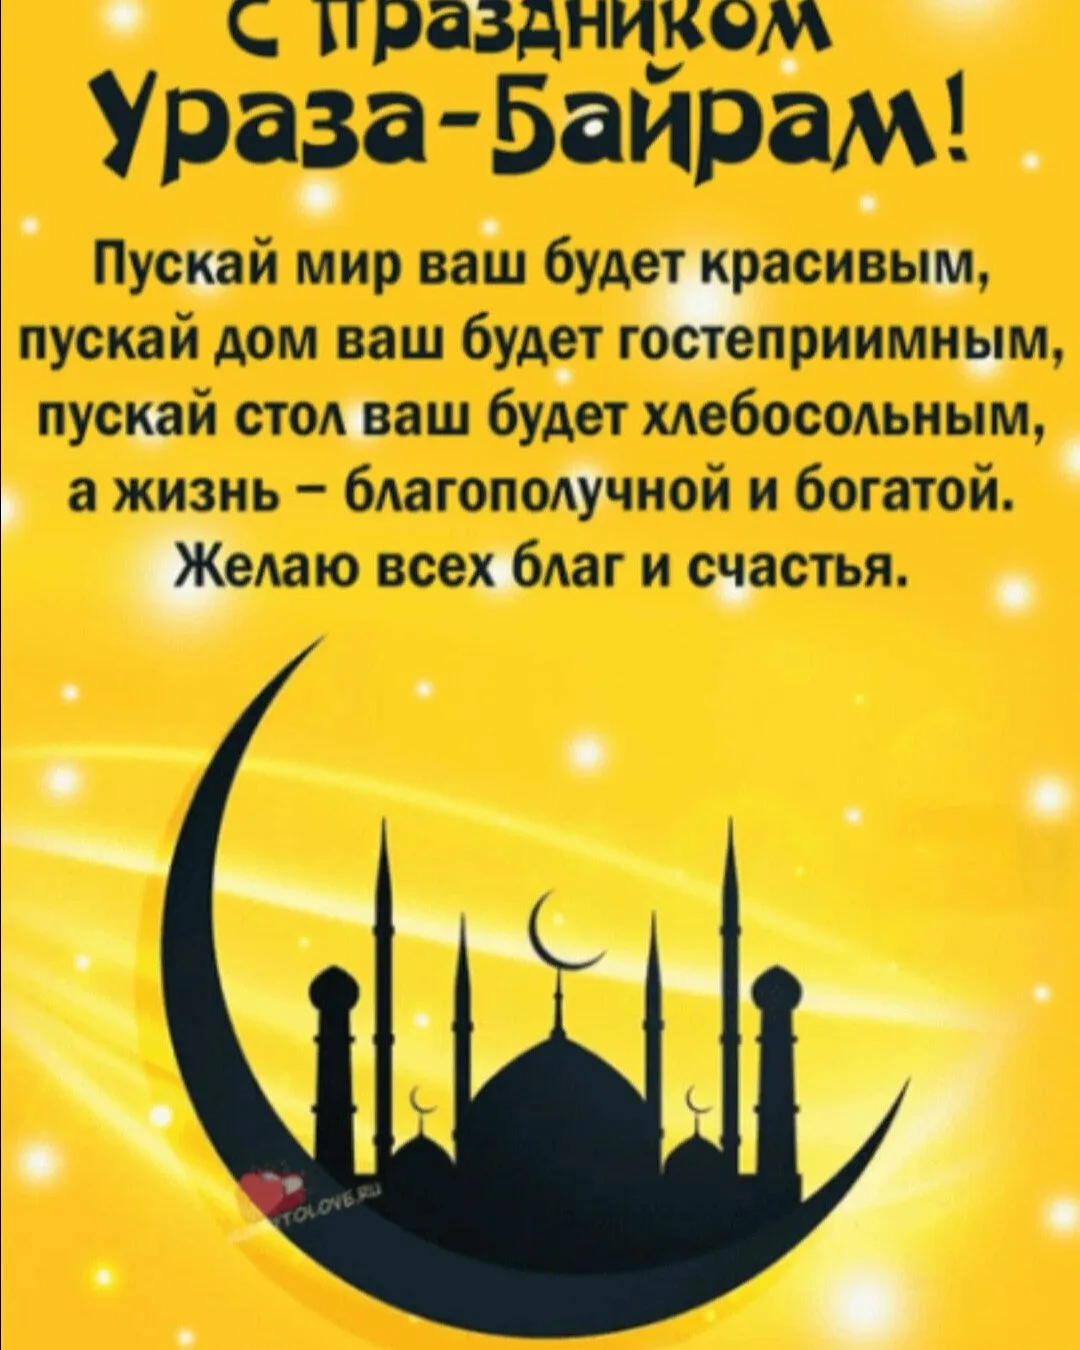 Фото Поздравление с праздником Ураза Байрам от православных #19